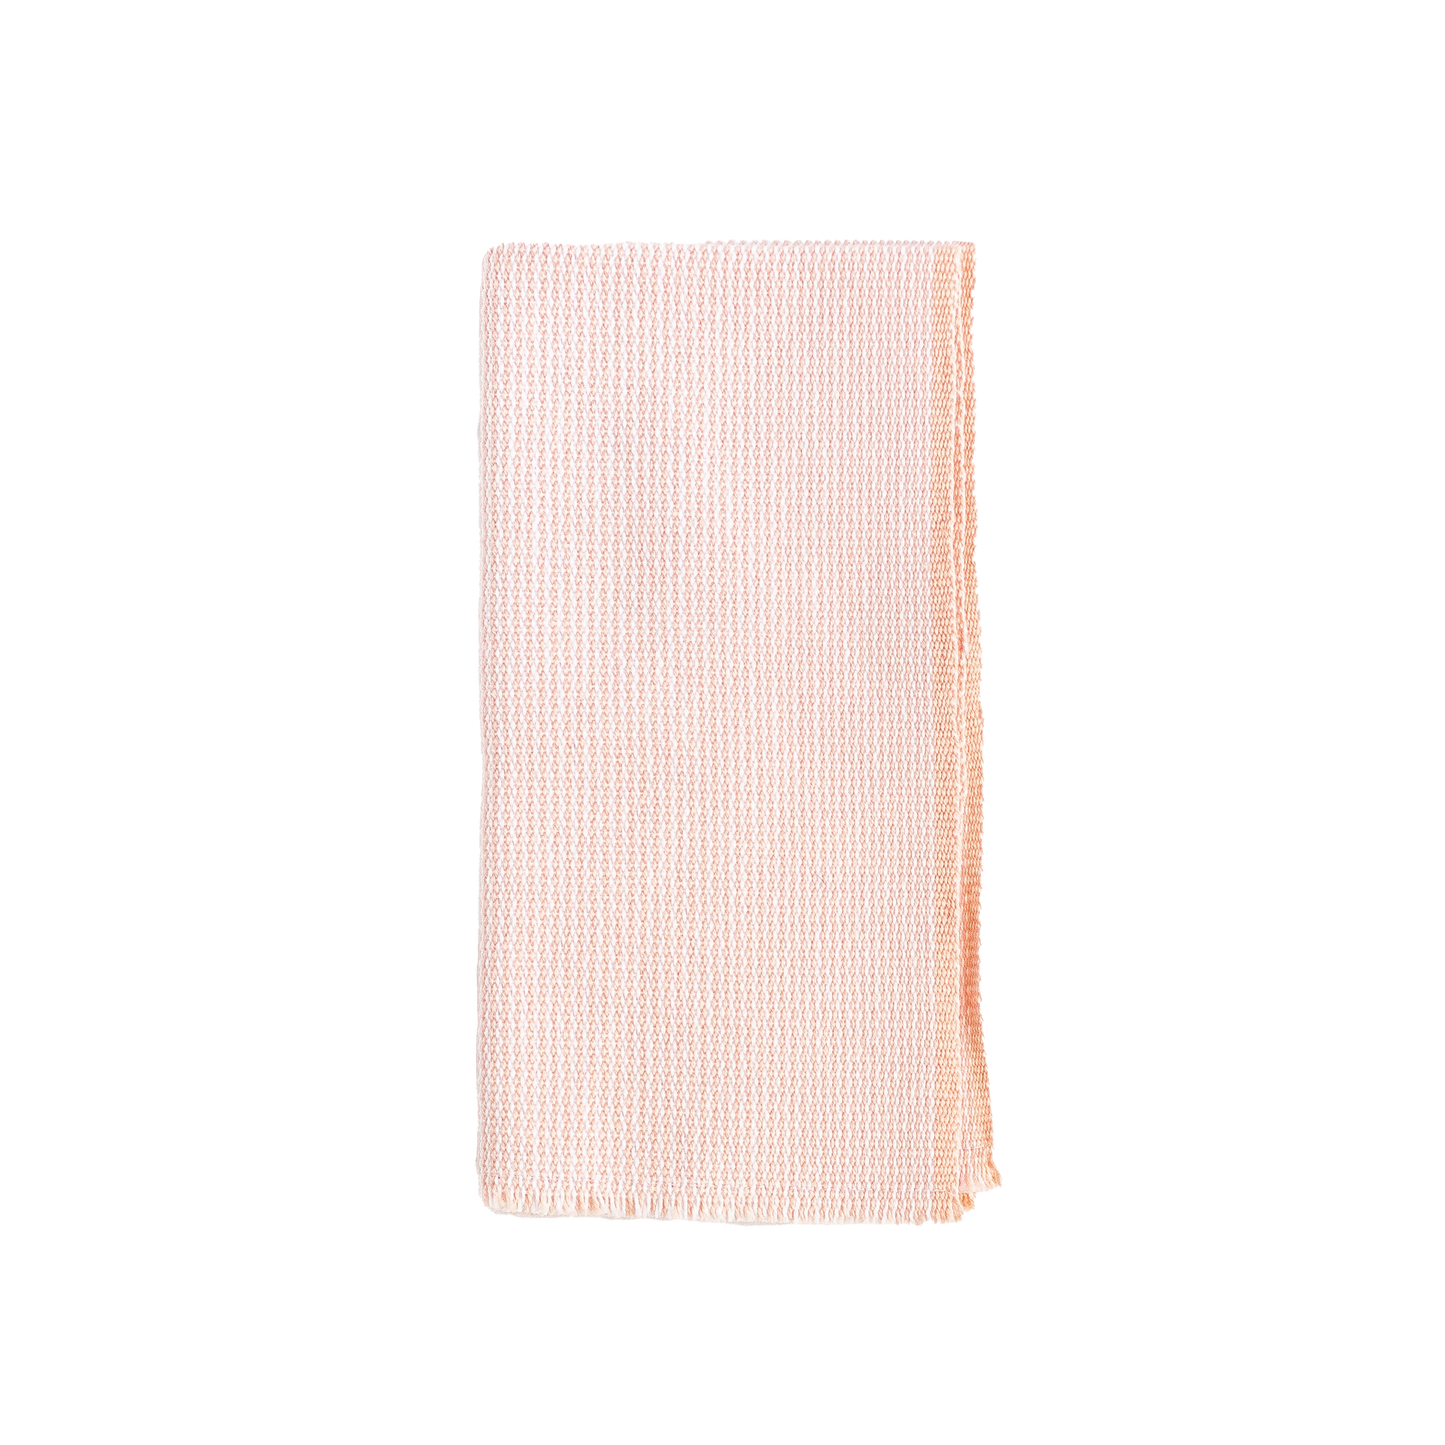 Folded blush and white zigzag napkin